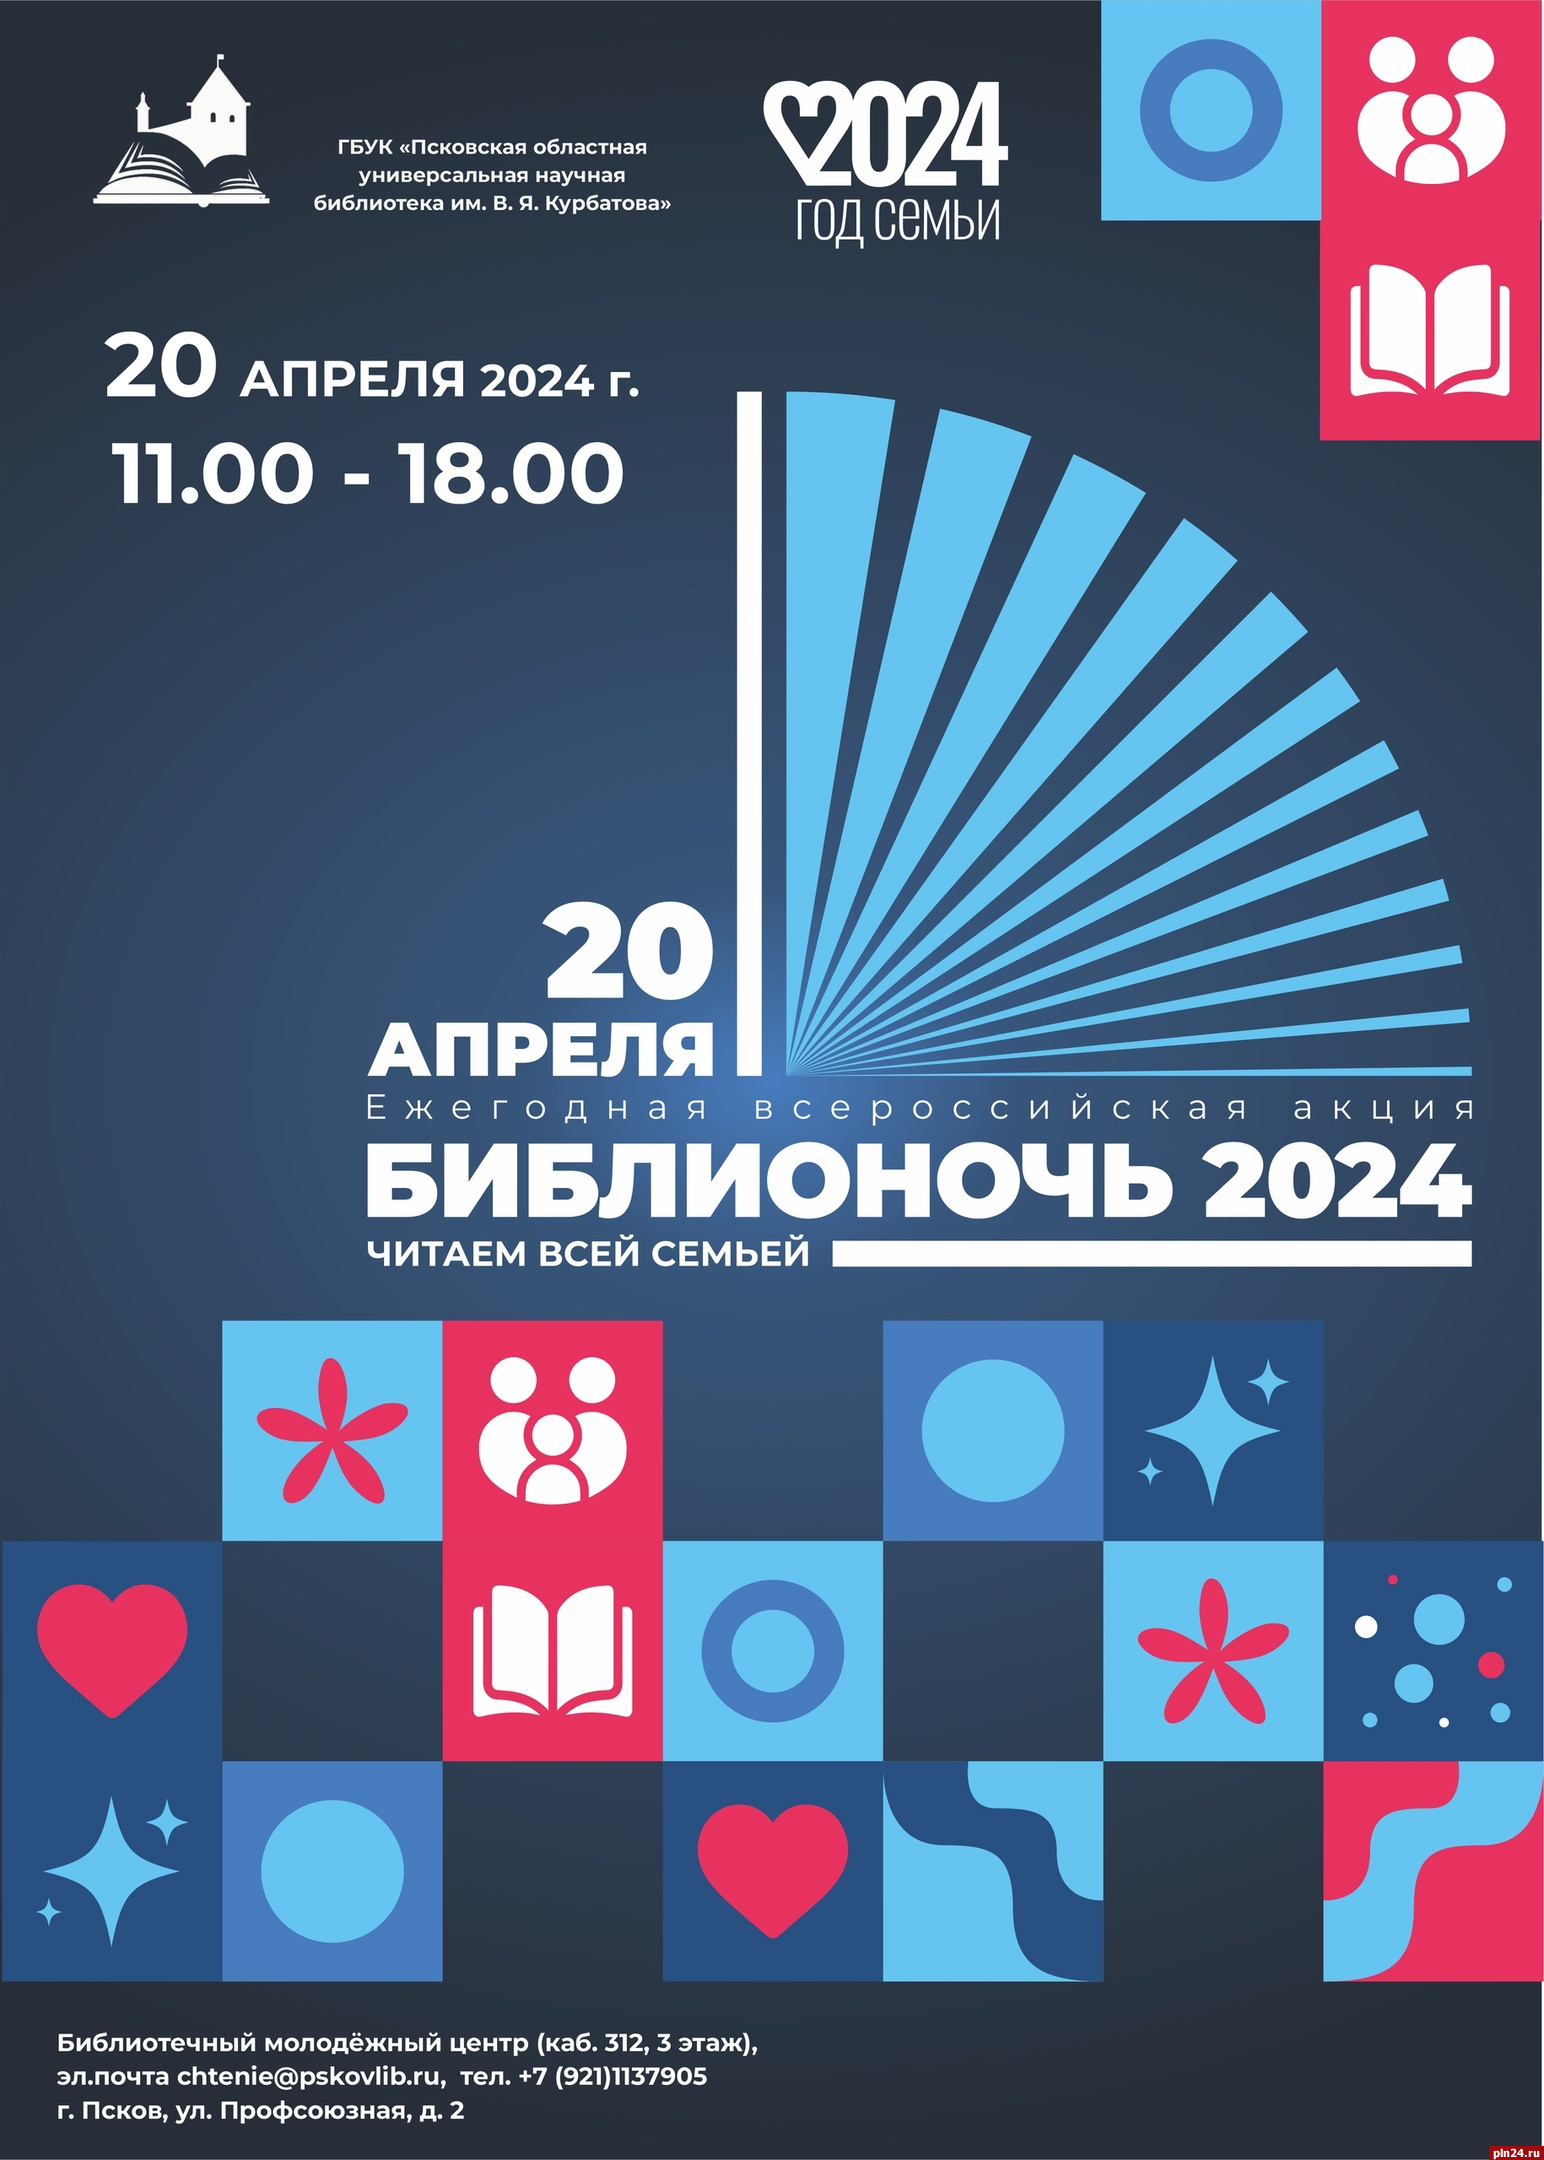 Всероссийская акция «Библионочь-2024» пройдет в Пскове 20 апреля